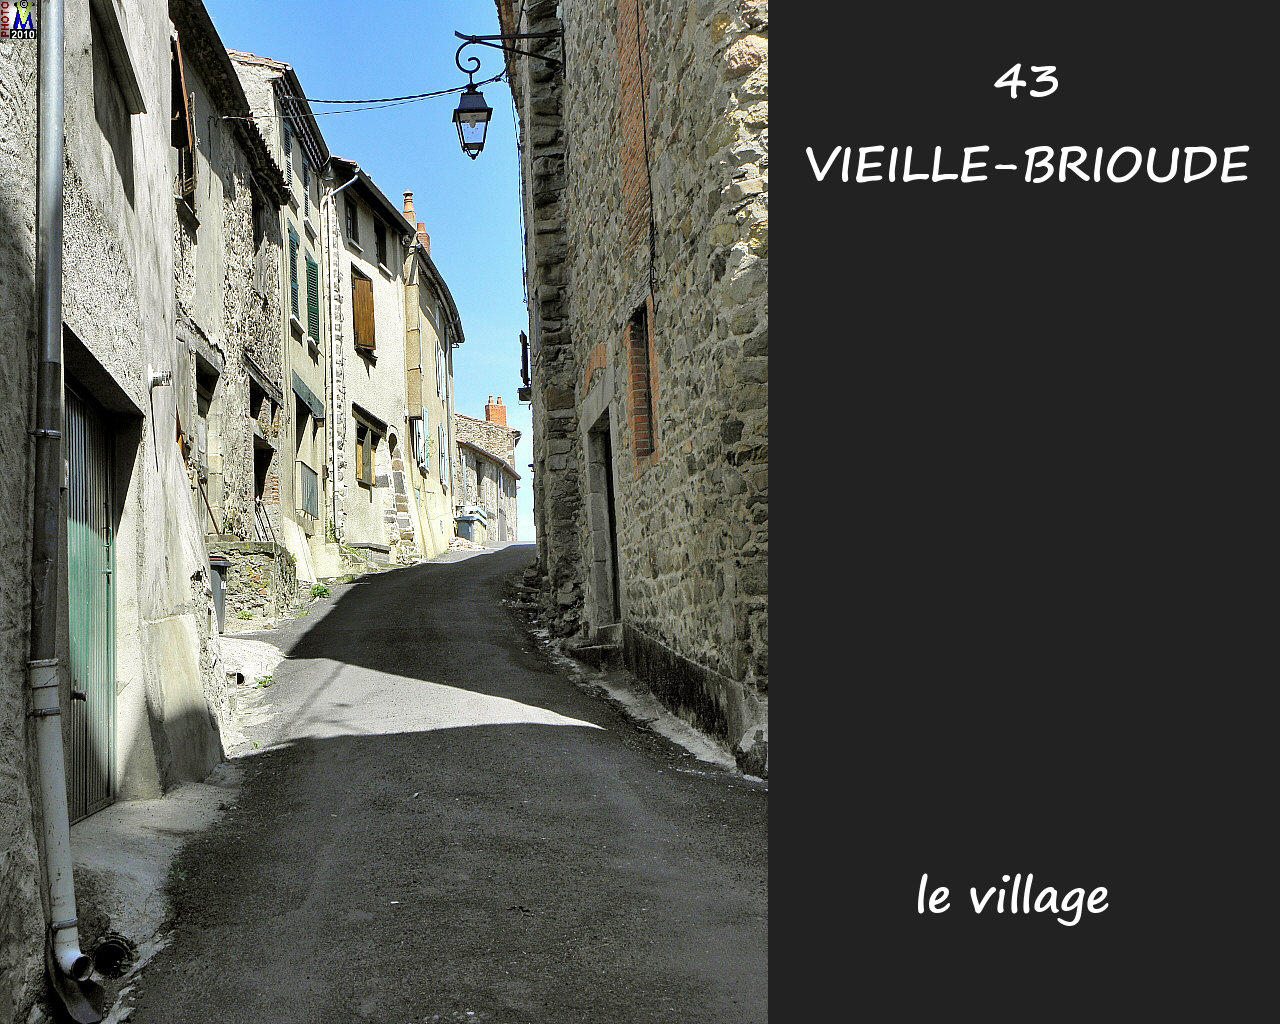 43VIEILLE-BRIOUDE_village_138.jpg